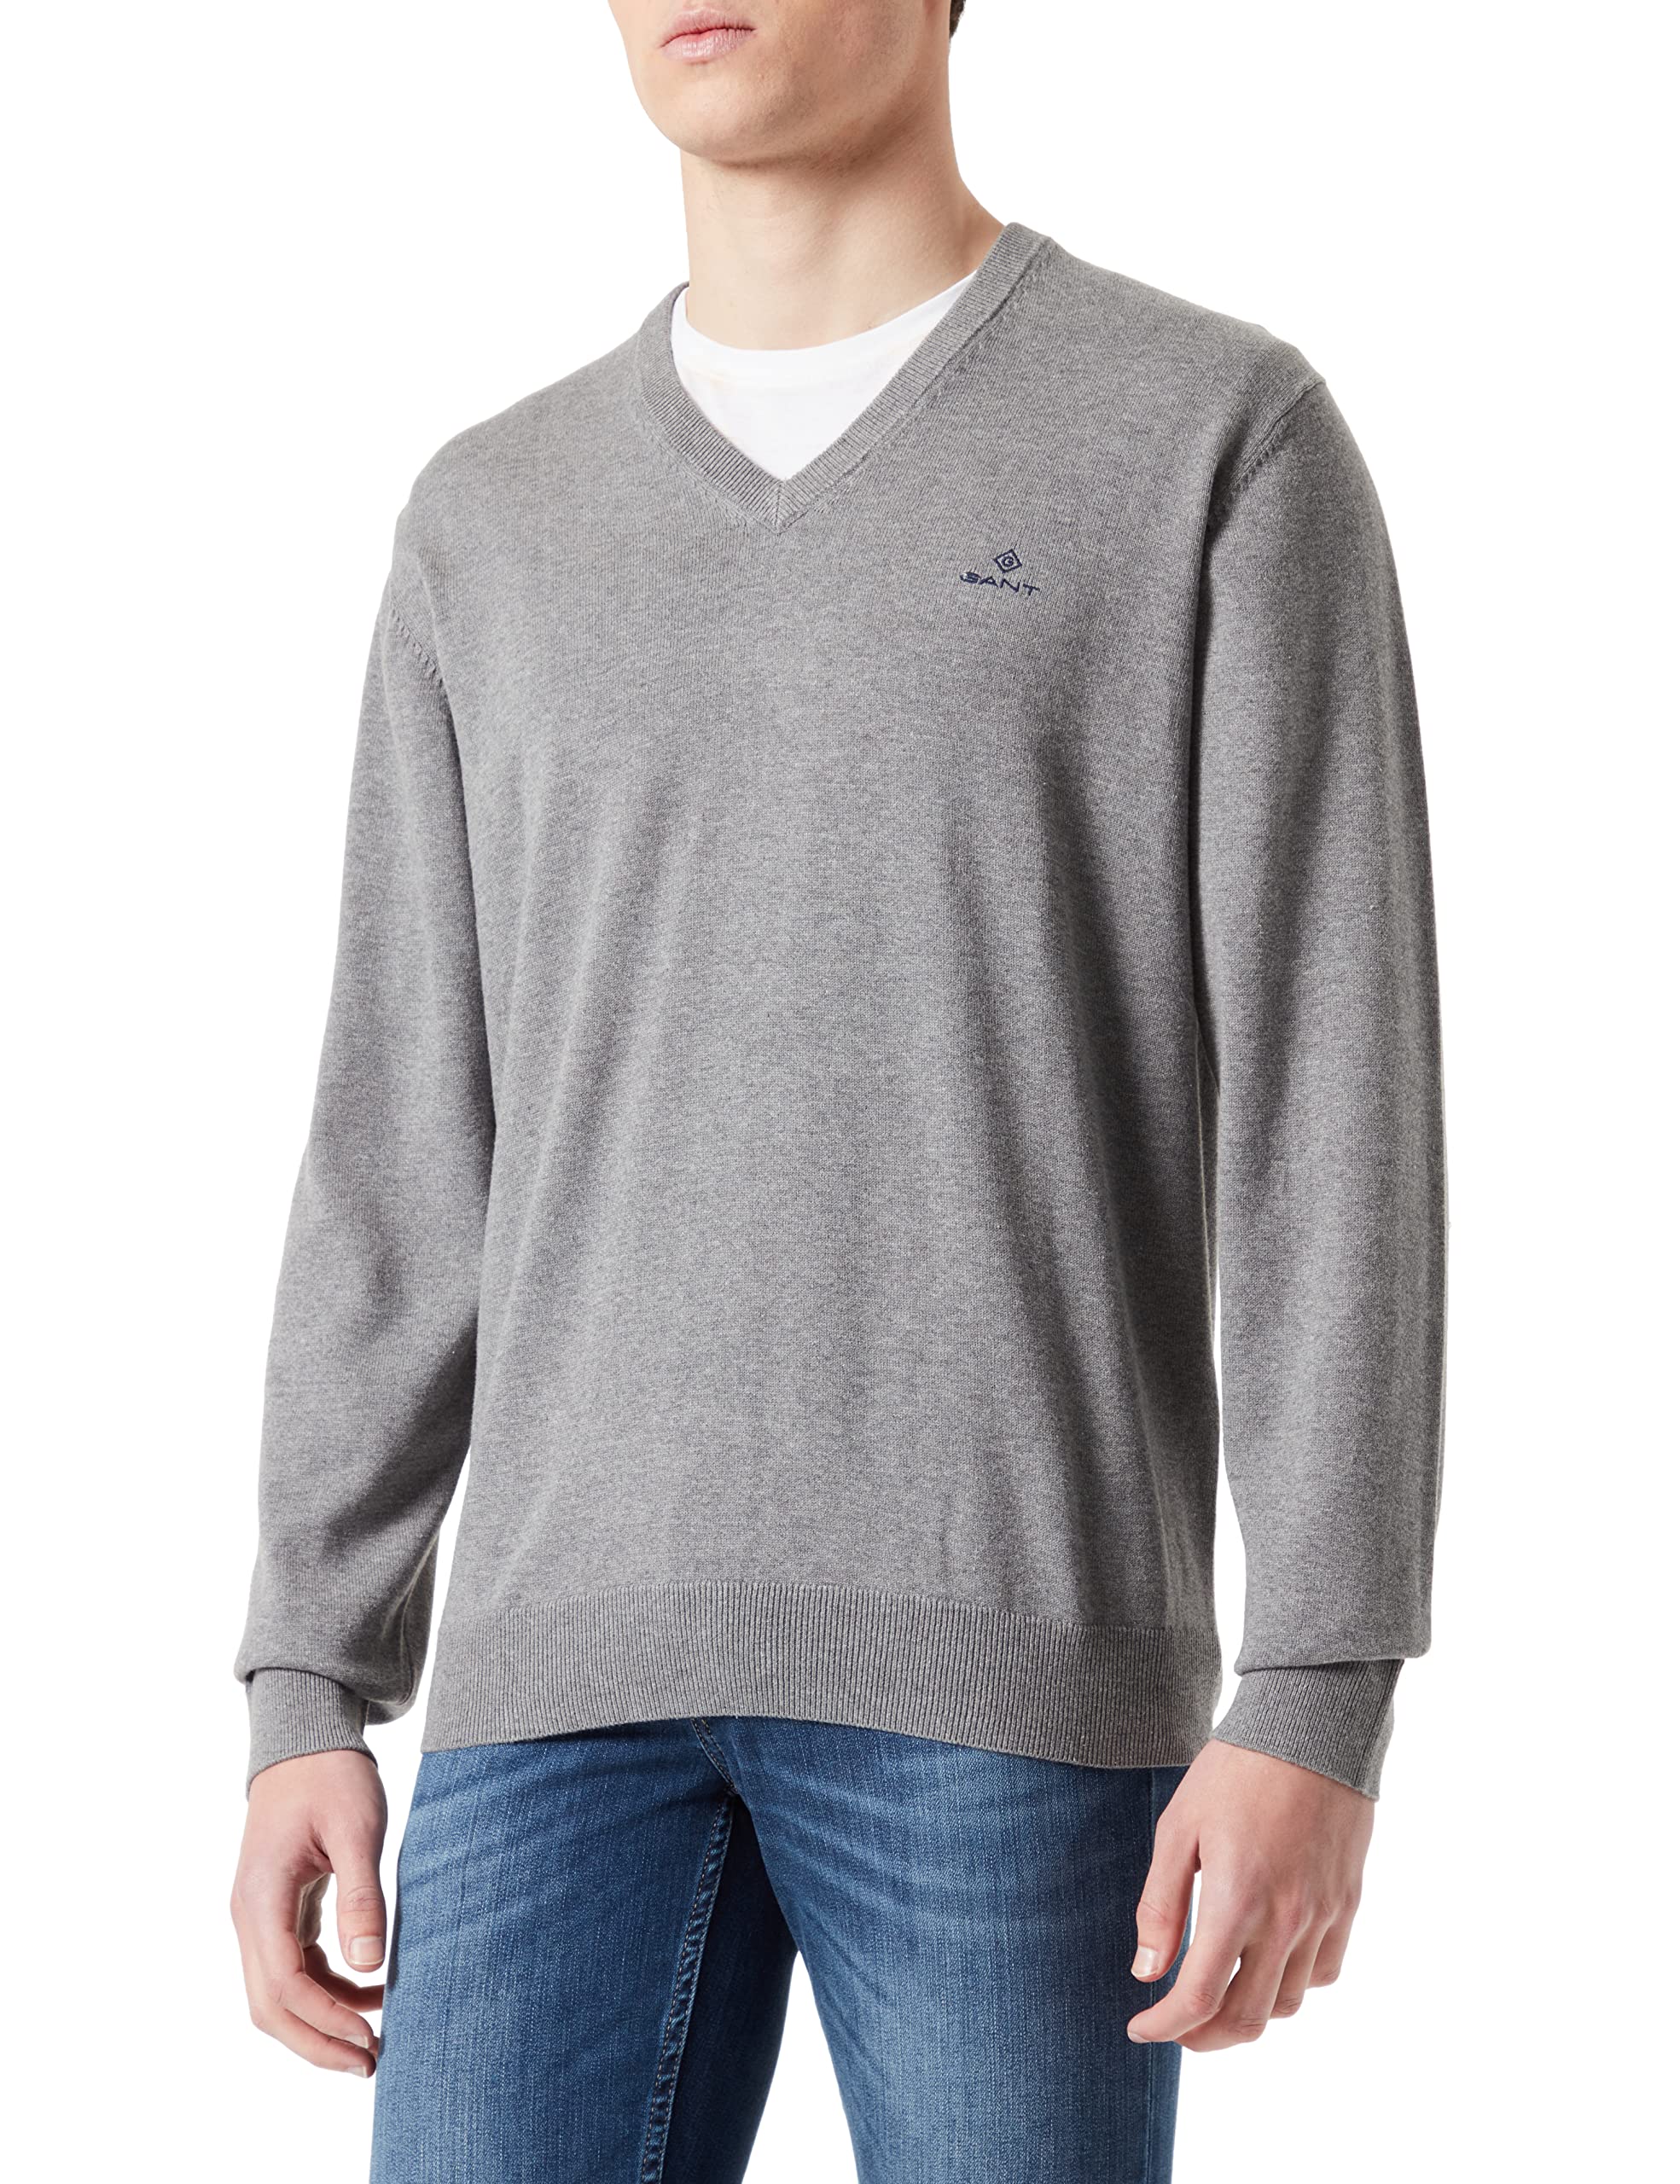 GANT Herren Classic Cotton V-Neck Pullover, Grau (Dark Grey Melange 92), Small (Herstellergröße: S)